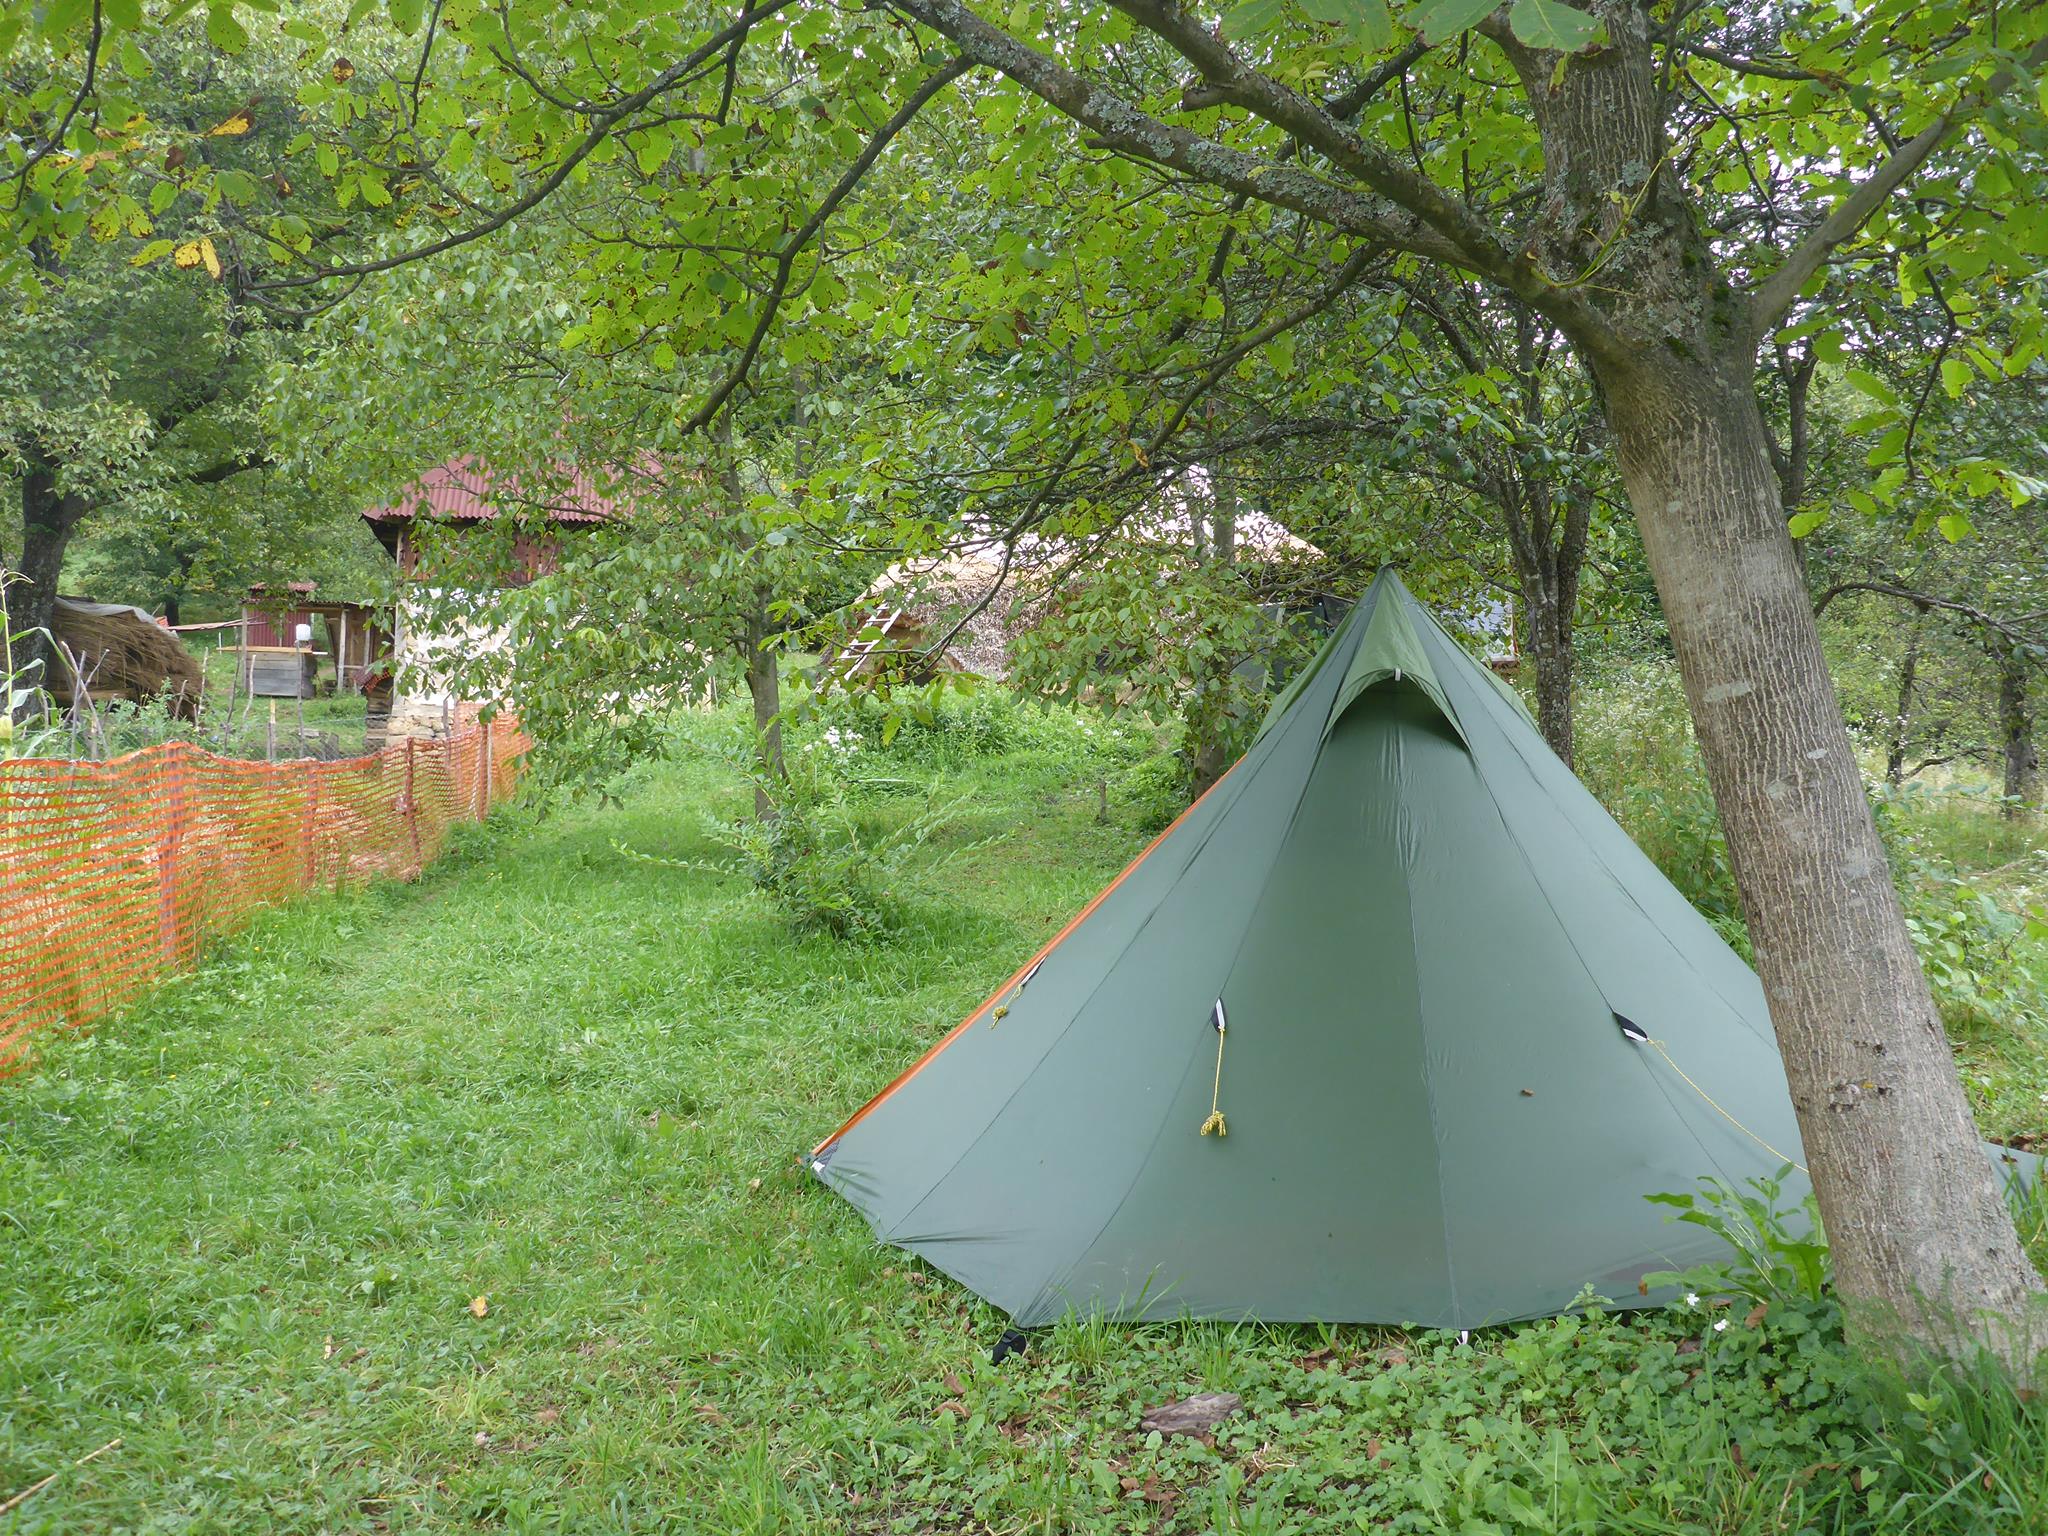 Pour ma part j'ai planté ma tente près du jardin